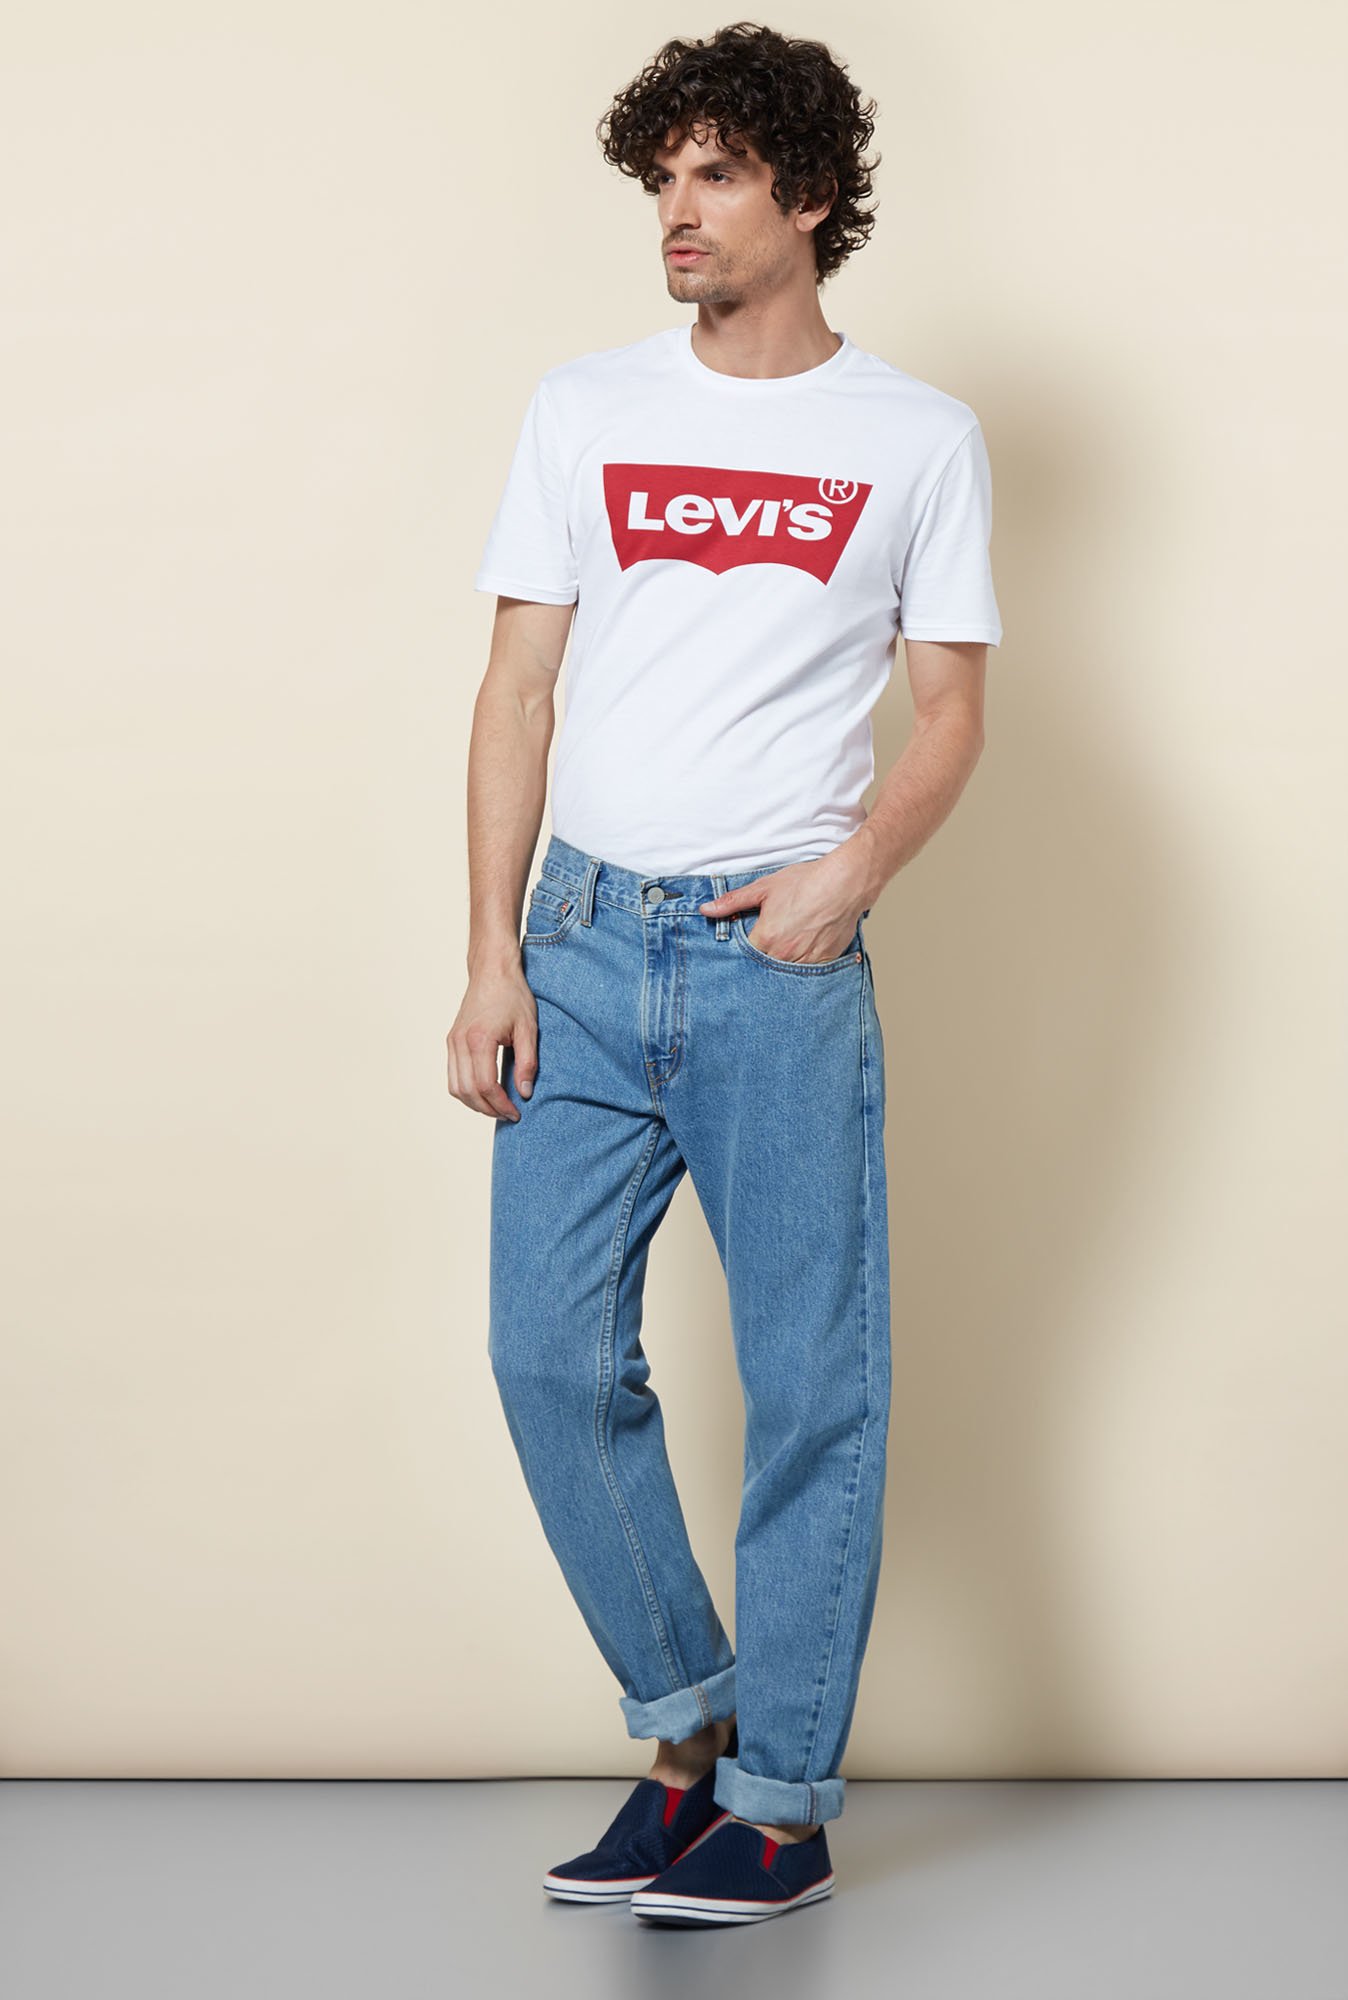 levis 513 jeans